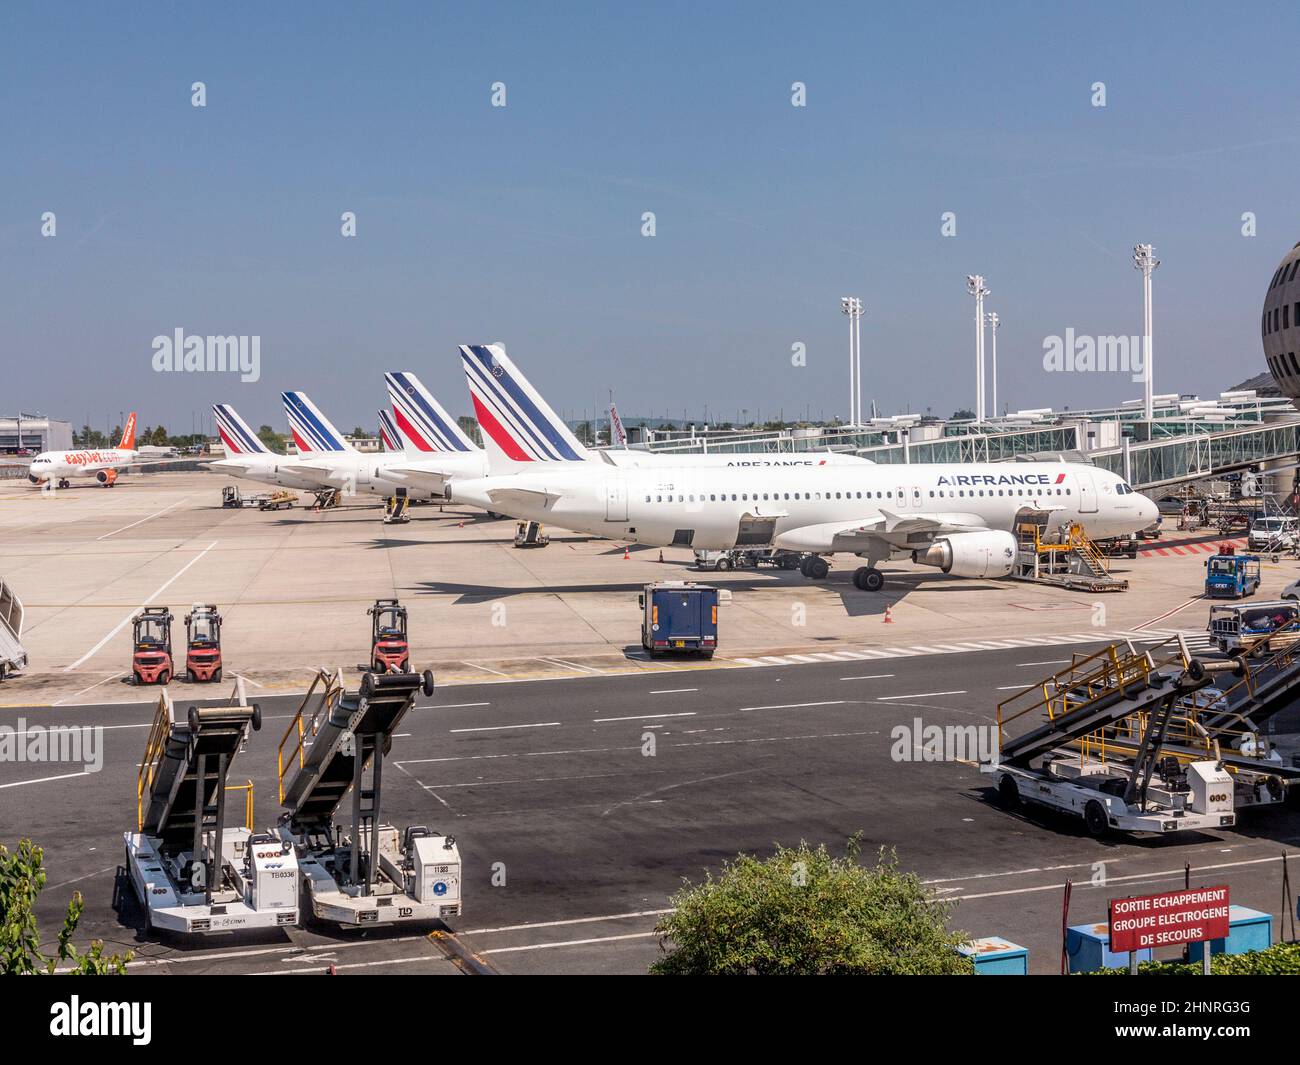 airfrance parchi aerei presso il nuovo terminal dell'aeroporto Charles de Gaulle di Parigi, Francia Foto Stock